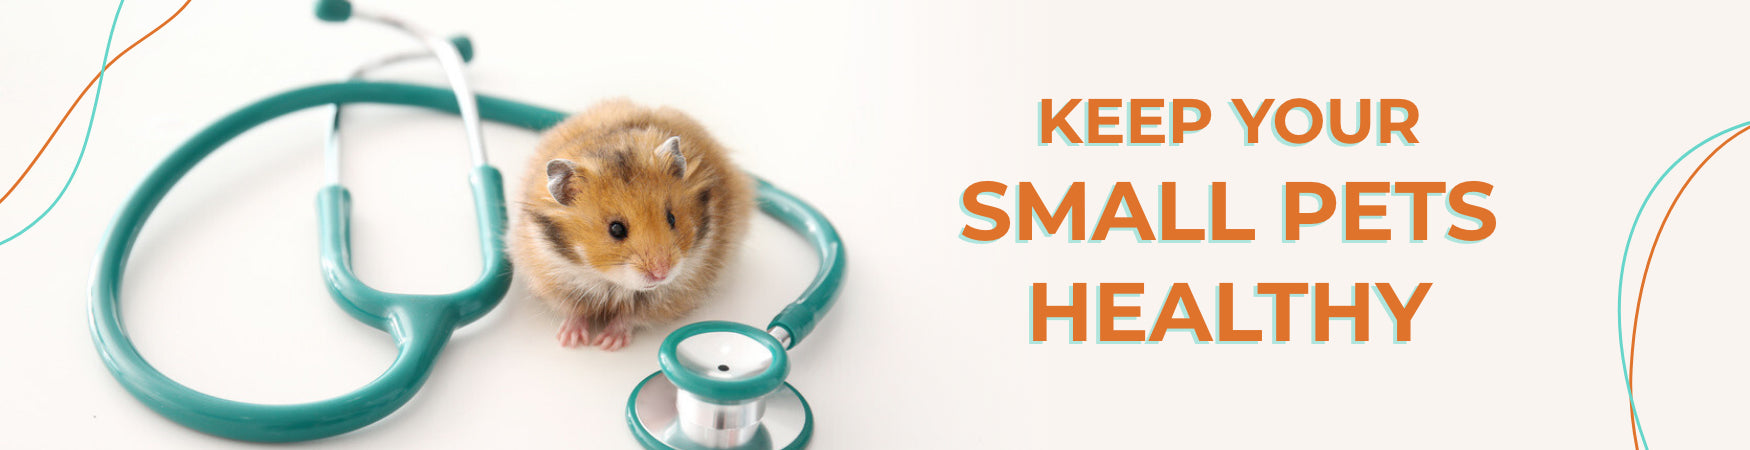 Beaphar Vitamin Solution for Rabbit Hamster Guinea Pig Rodent